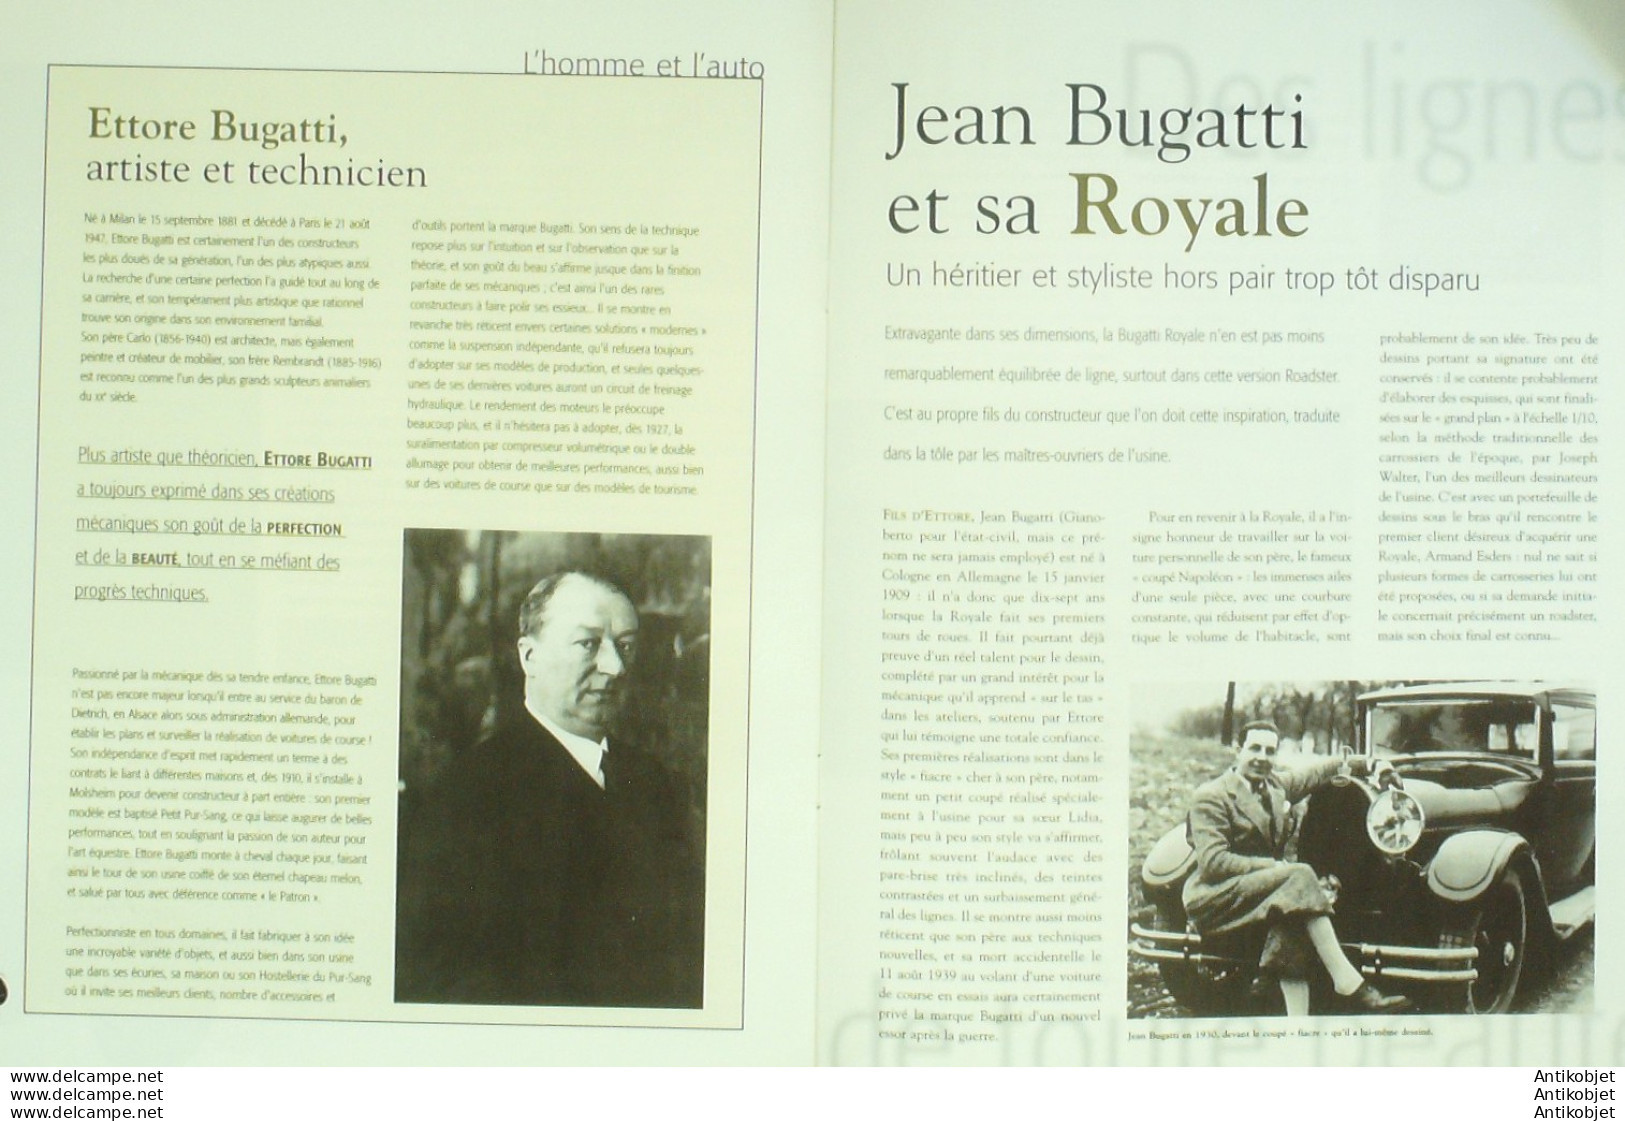 Bugatti Royale Type 41 1927 Cabriolet Esders édition Hachette - Historia